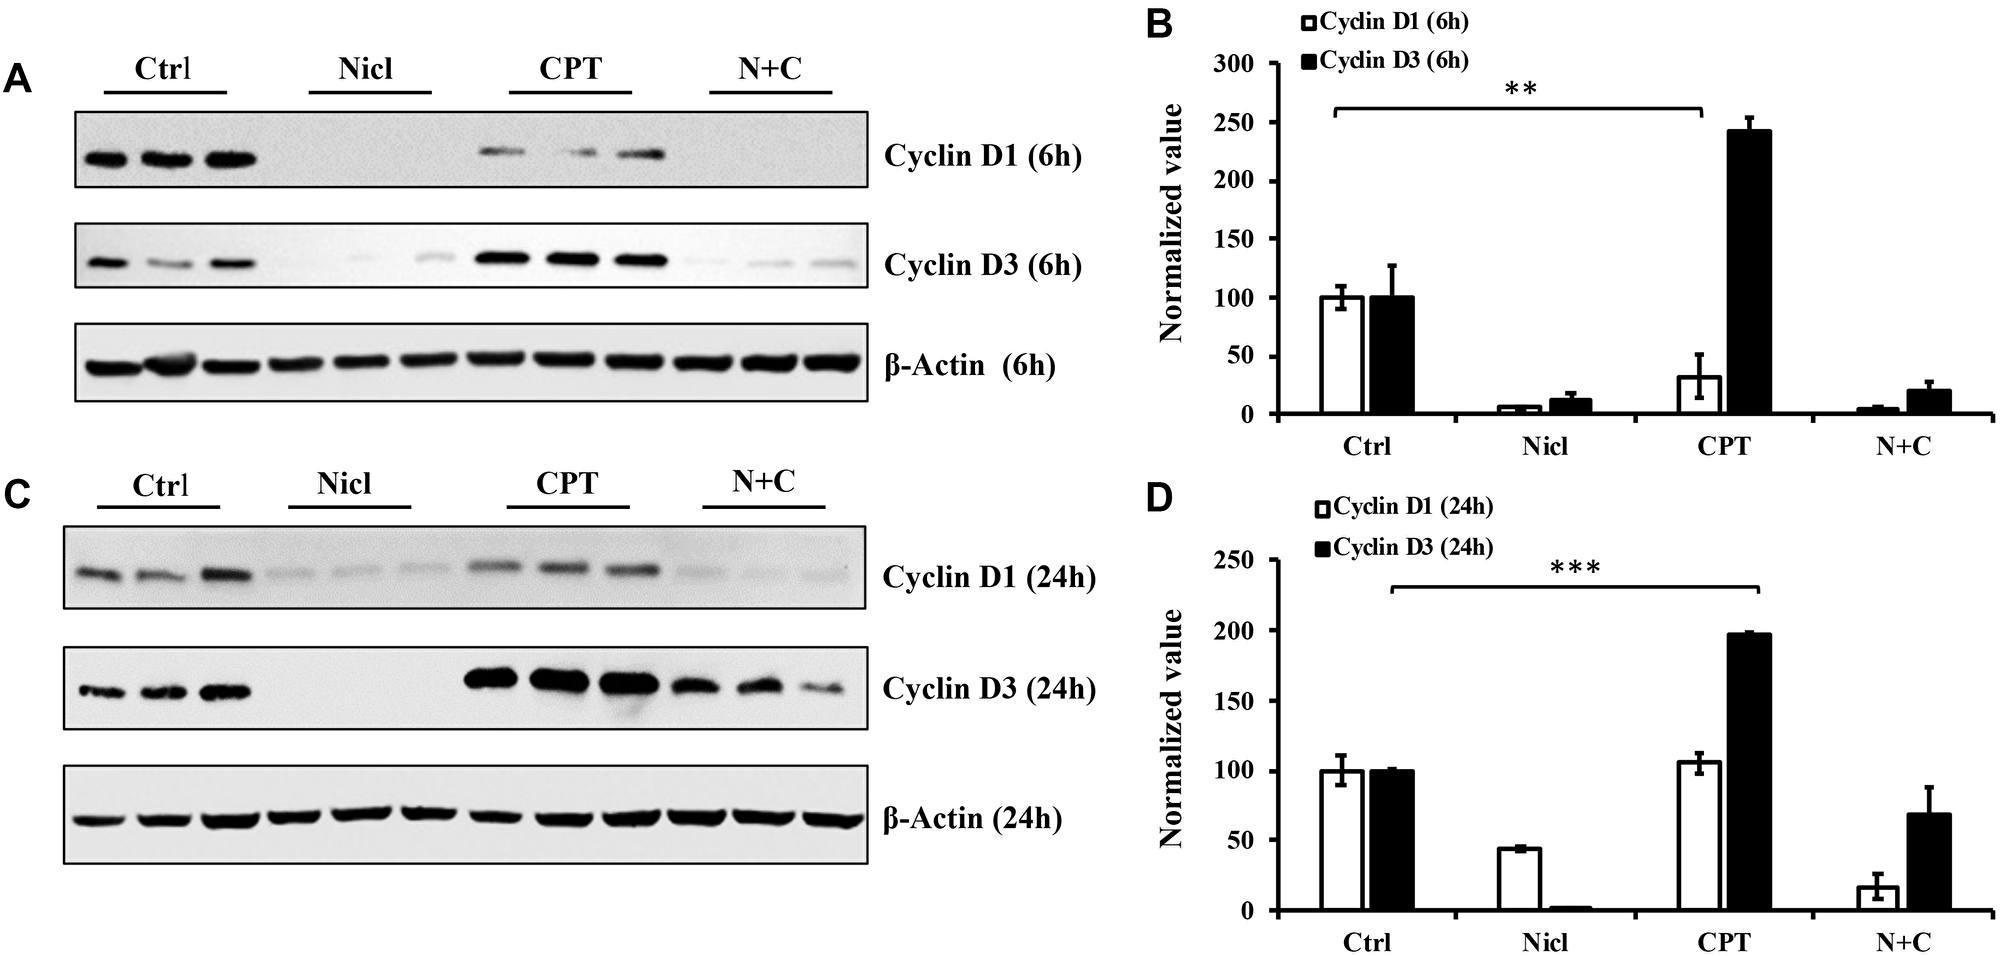 Niclosamide represses cyclin D1 expression, whereas CPT markedly enhances cyclin D3 expression.